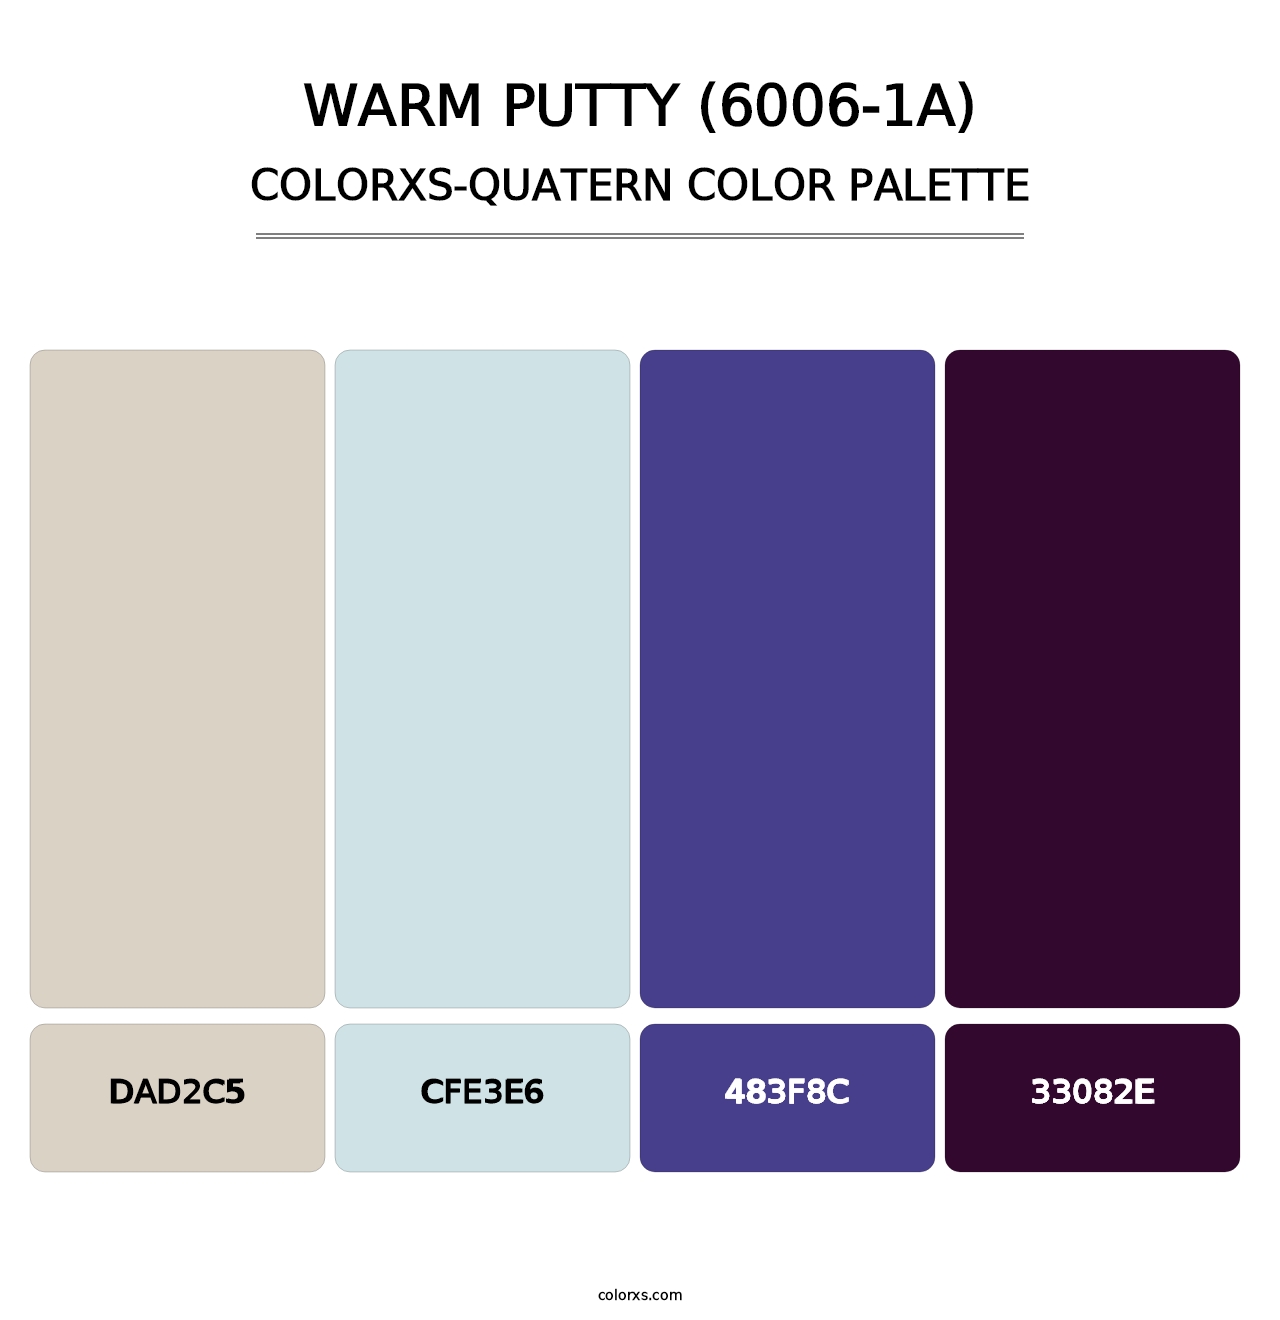 Warm Putty (6006-1A) - Colorxs Quatern Palette